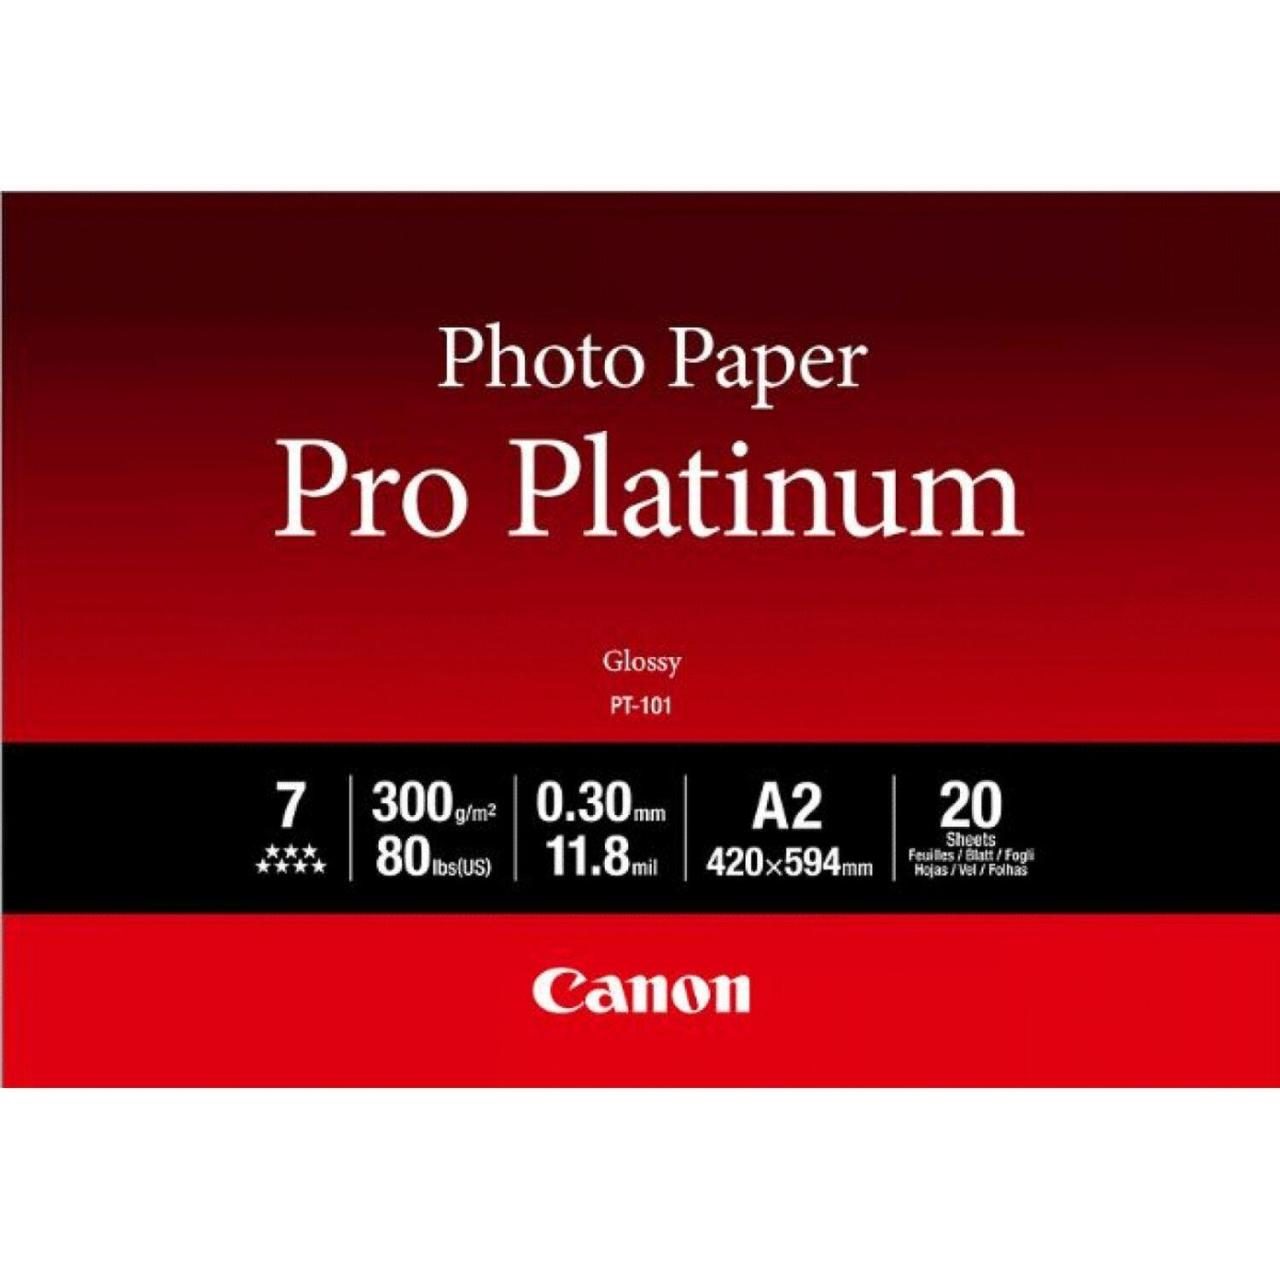 Canon PT-101 Pro Platinum Fotopapier glänzend A2 420x594mm 300g/m² - 20 Blatt von Canon